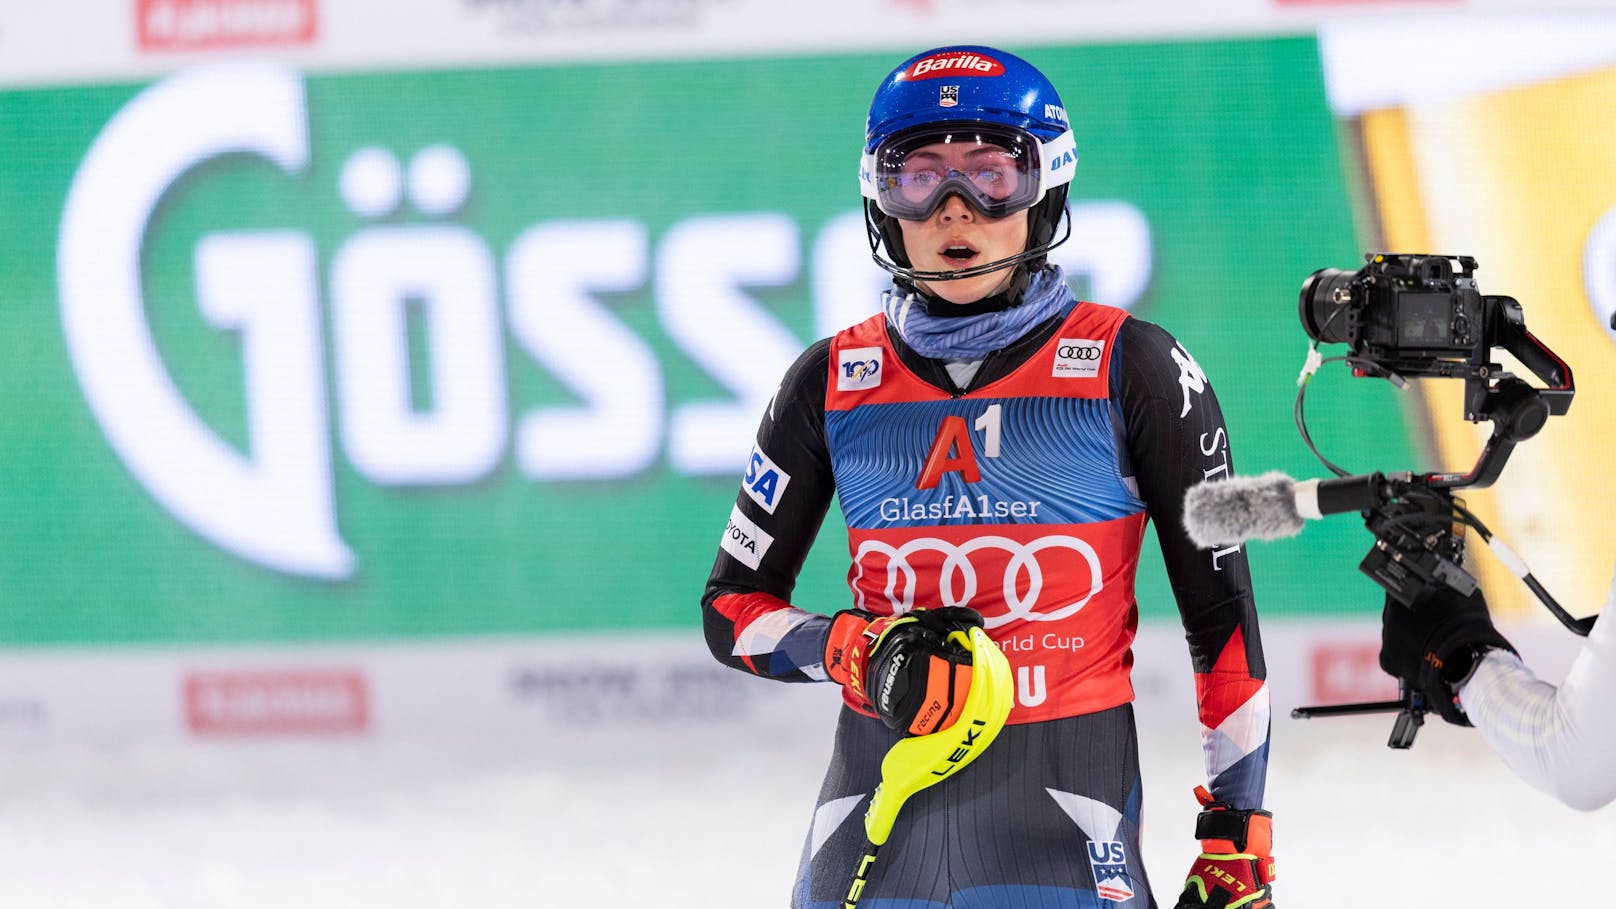 Ski-Star Shiffrin mit Kritik: "Es ist wirklich zu viel"